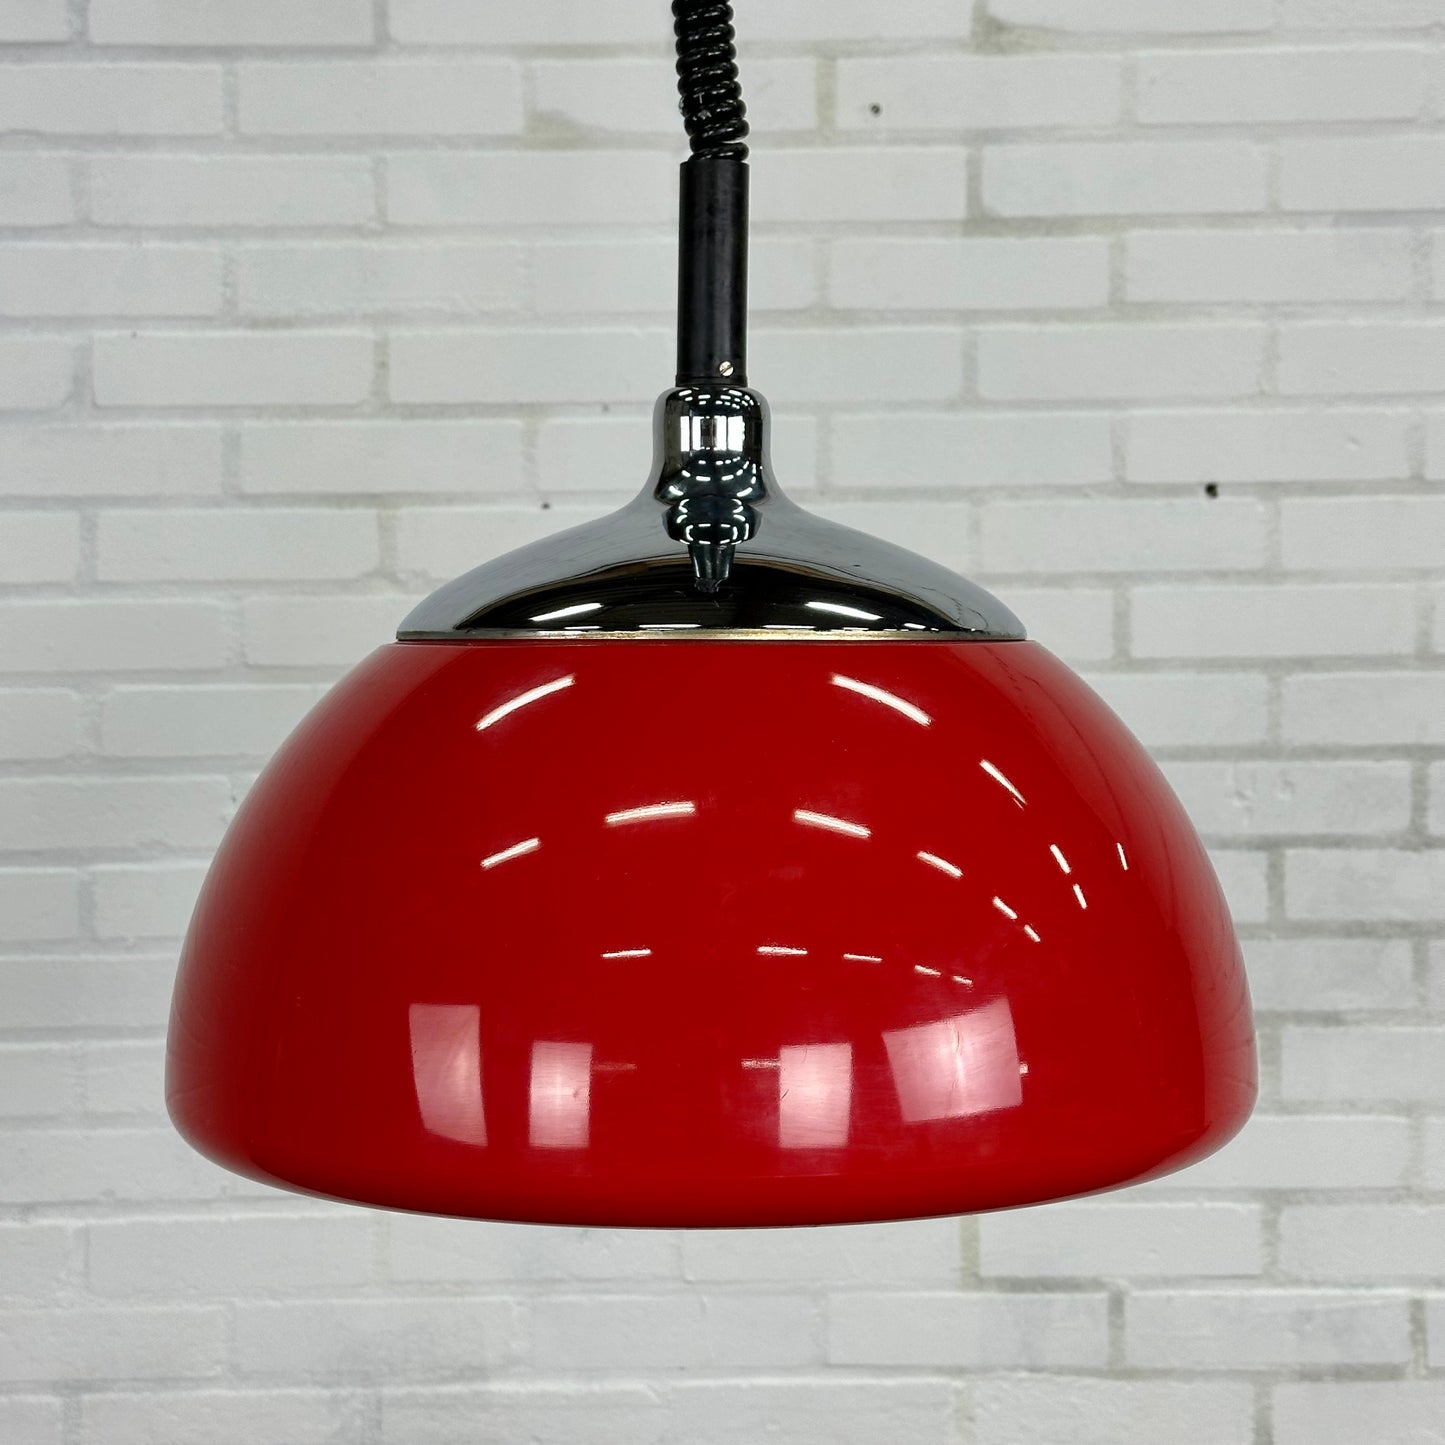 Rode space age hanglamp van Cosack Leuchten